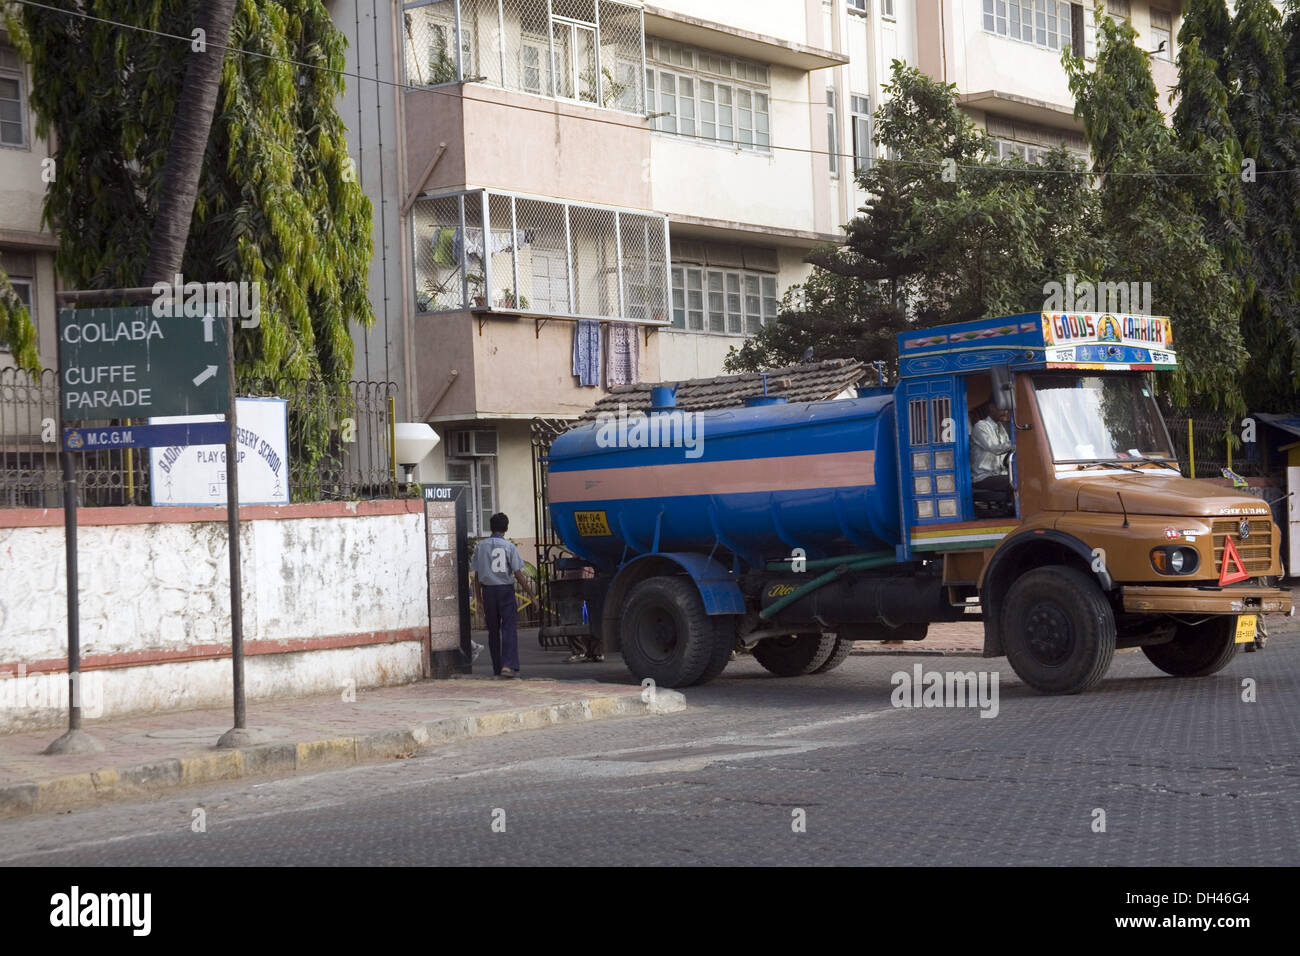 Camion-citerne camion d'approvisionnement en eau potable à l'édification de colaba Cuffe Parade street mumbai Maharashtra Inde Asie Banque D'Images